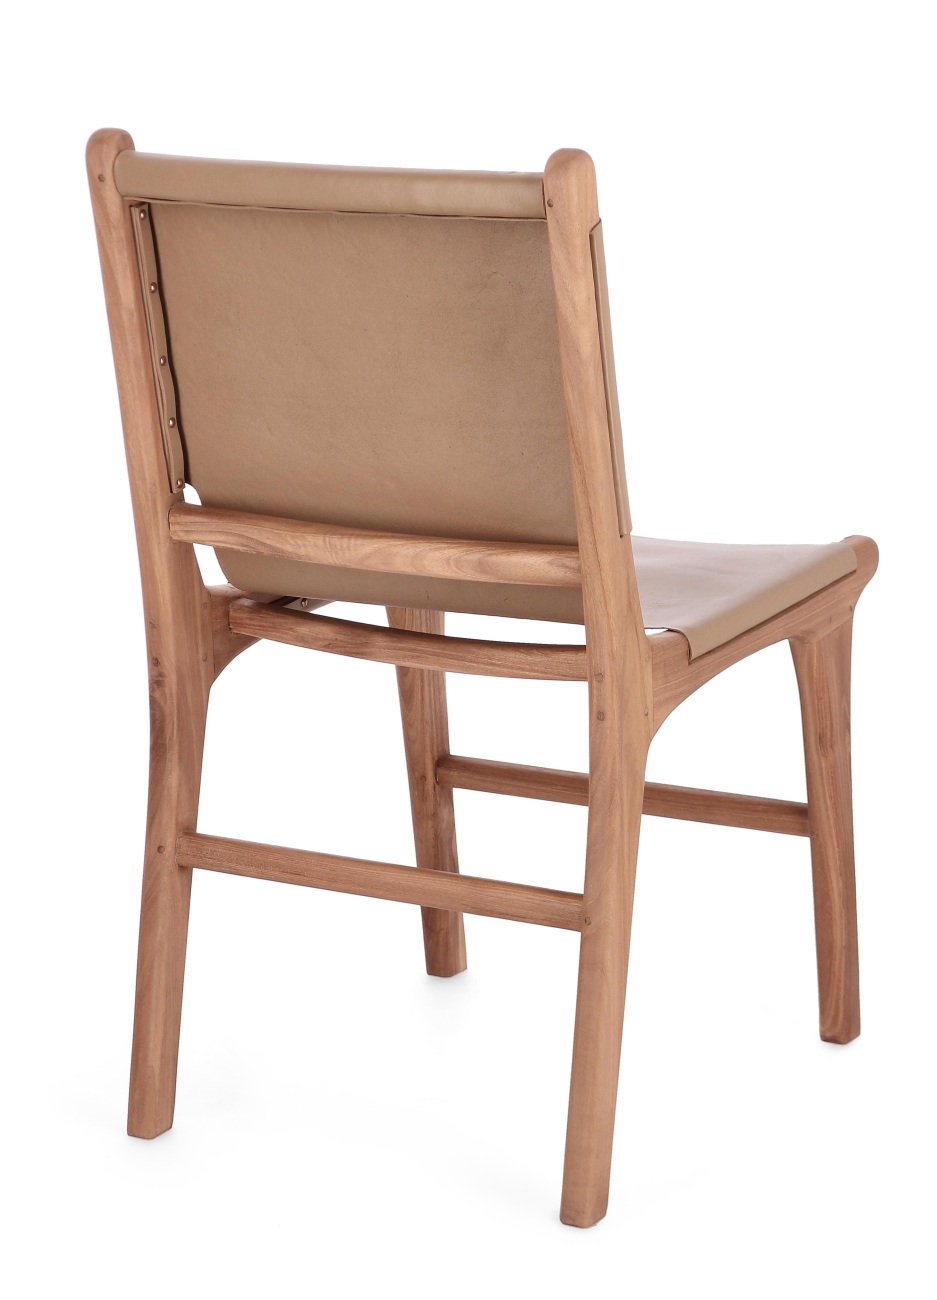 Der Esszimmerstuhl Eugenie überzeugt mit seinem modernen Stil. Gefertigt wurde er aus Leder, welches einen Taupe Farbton besitzt. Das Gestell ist aus Teakholz und hat eine natürliche Farbe. Der Stuhl besitzt eine Sitzhöhe von 45 cm.